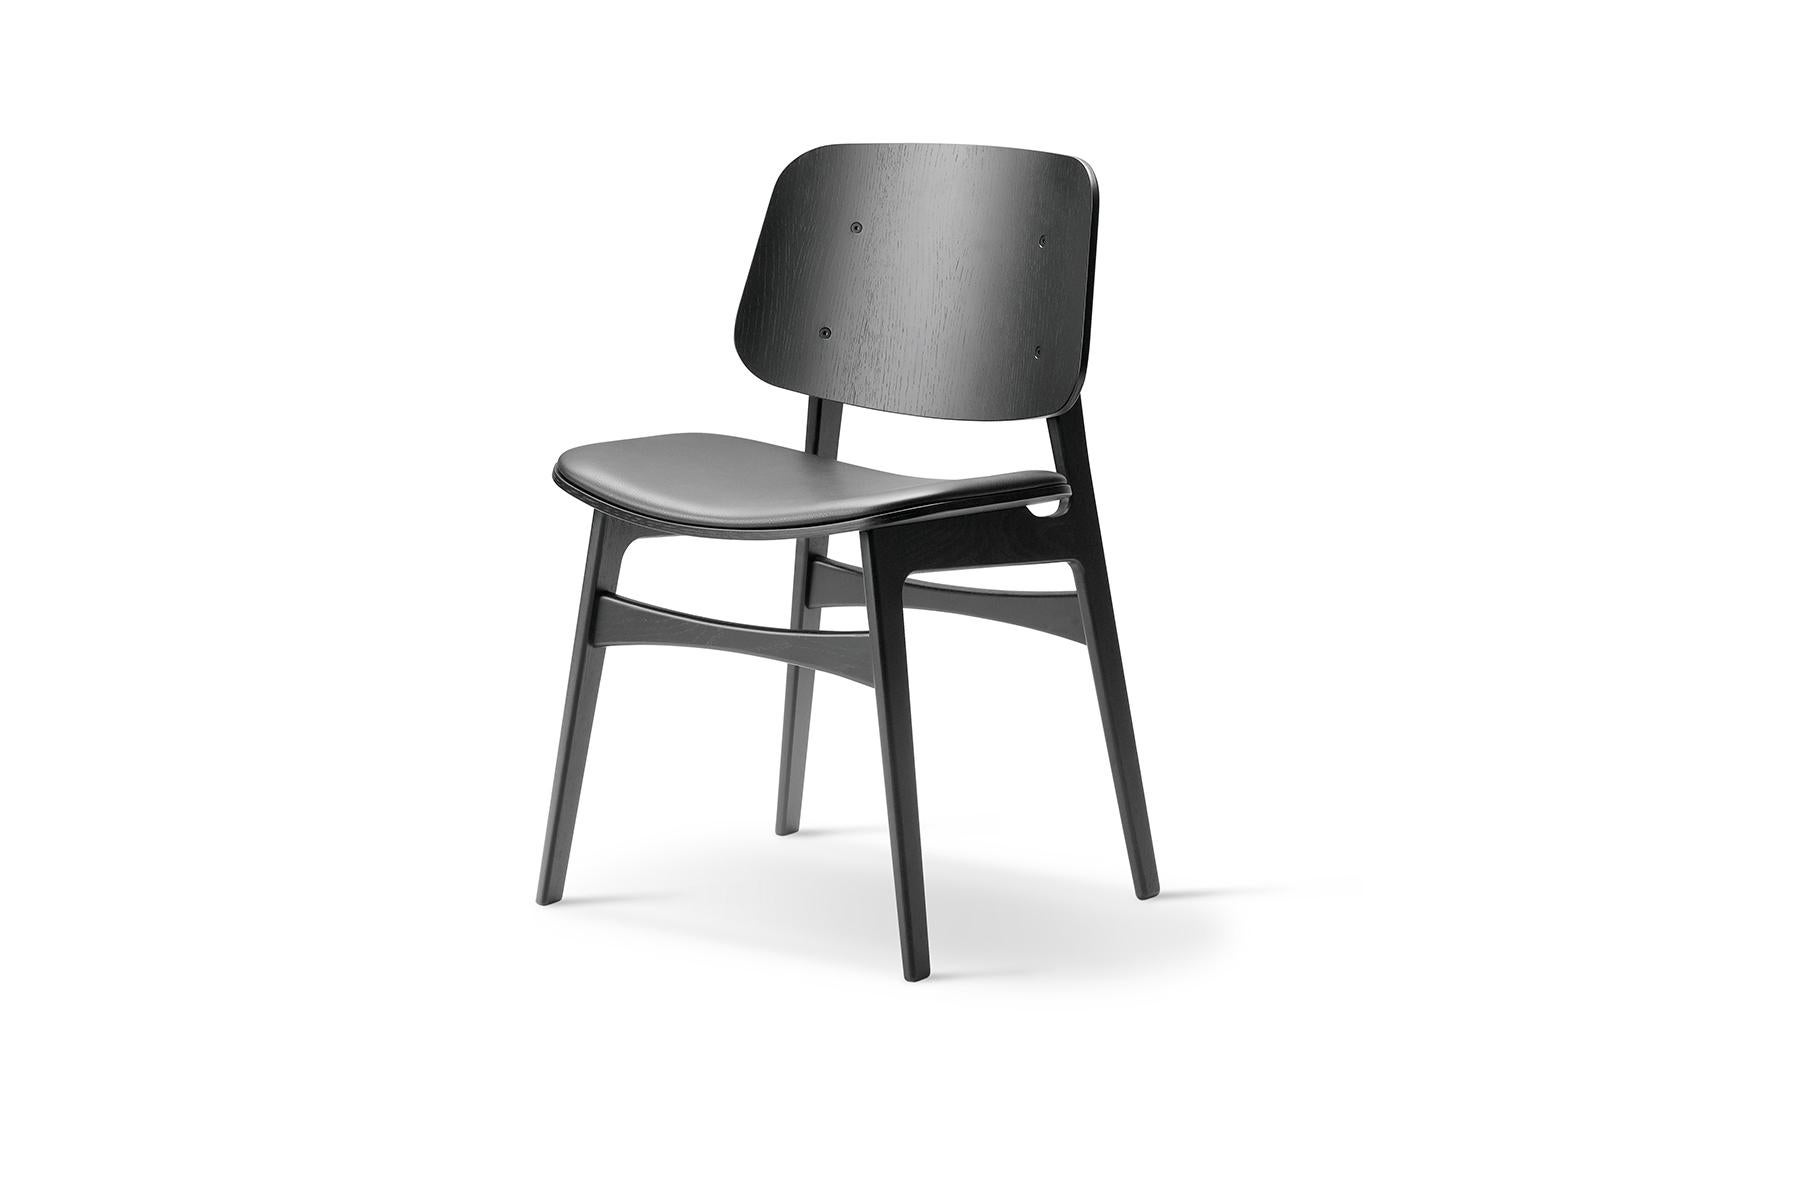 Mogensen a présenté le prototype de la chaise Børge Mogensen Soborg en 1950. Son intention était de fusionner des coquilles de contreplaqué avec le fonctionnalisme du bois massif qui fait sa signature. Le dossier et l'assise généreux, avec le